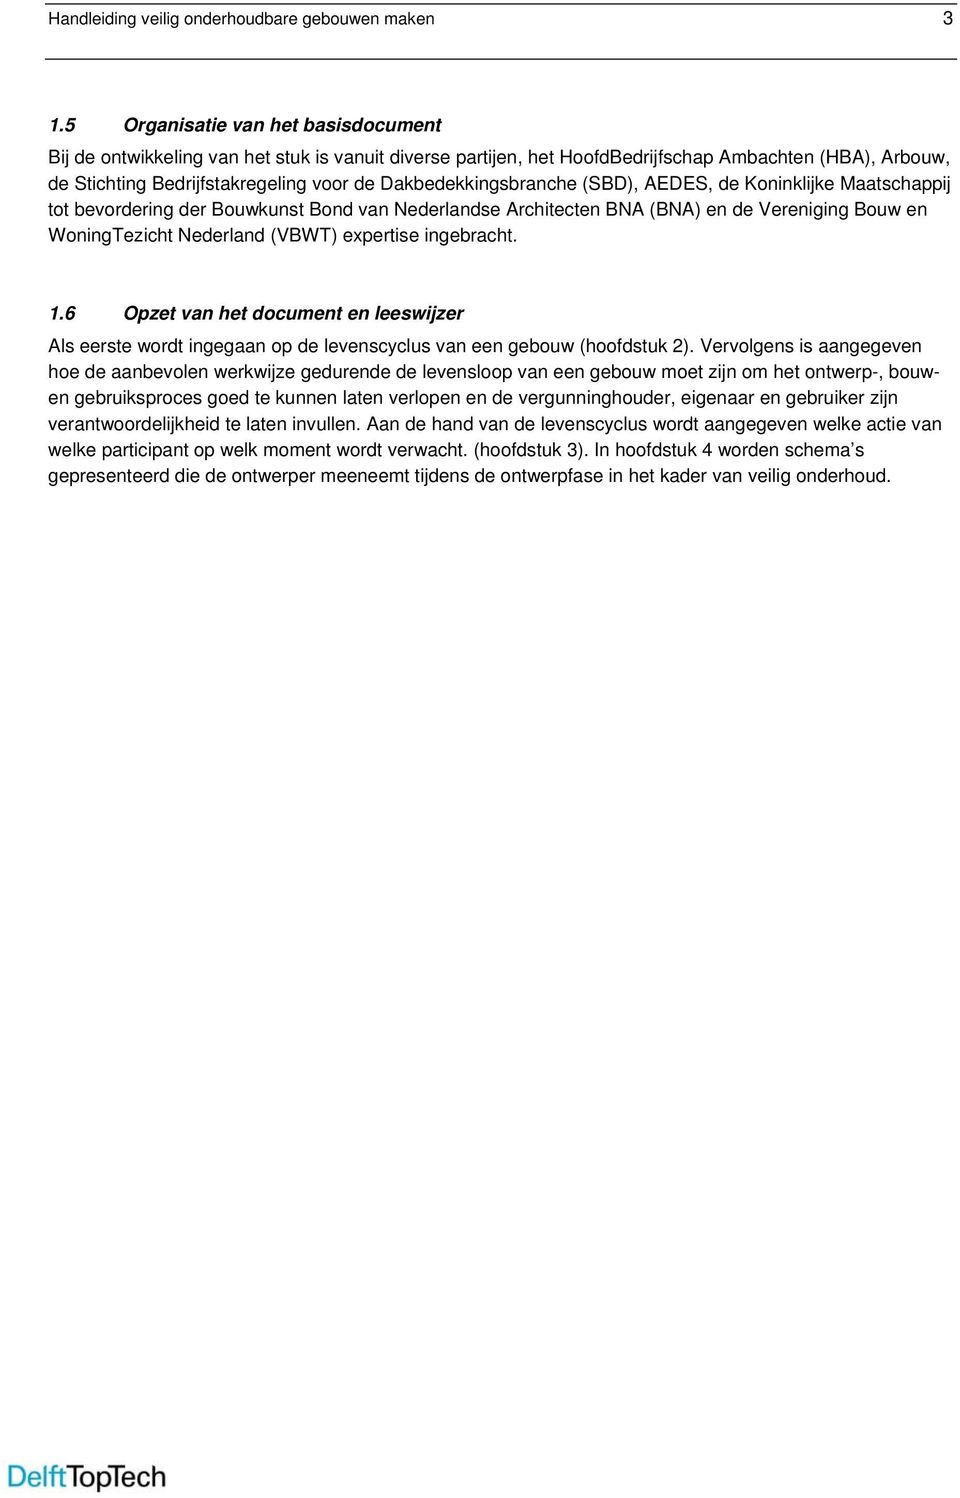 Dakbedekkingsbranche (SBD), AEDES, de Koninklijke Maatschappij tot bevordering der Bouwkunst Bond van Nederlandse Architecten BNA (BNA) en de Vereniging Bouw en WoningTezicht Nederland (VBWT)